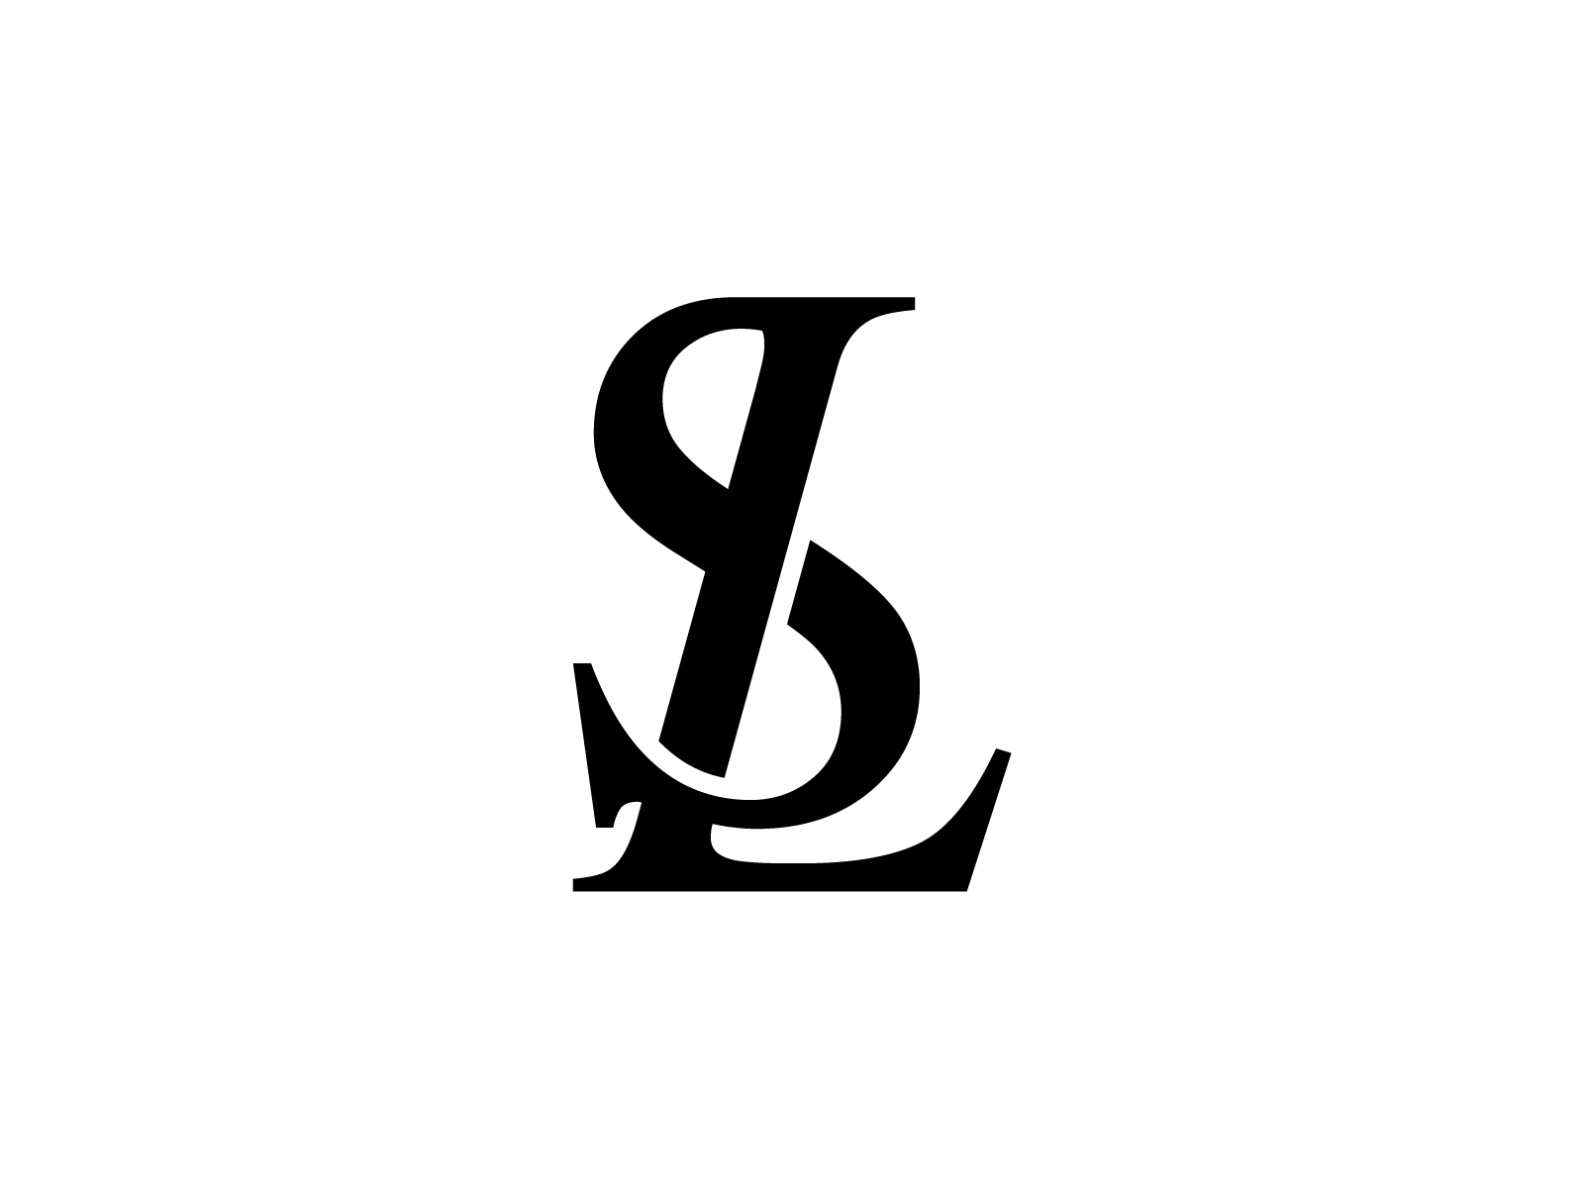 SL Mark Logo Design for Clothing Brand by Murat Bo on Dribbble